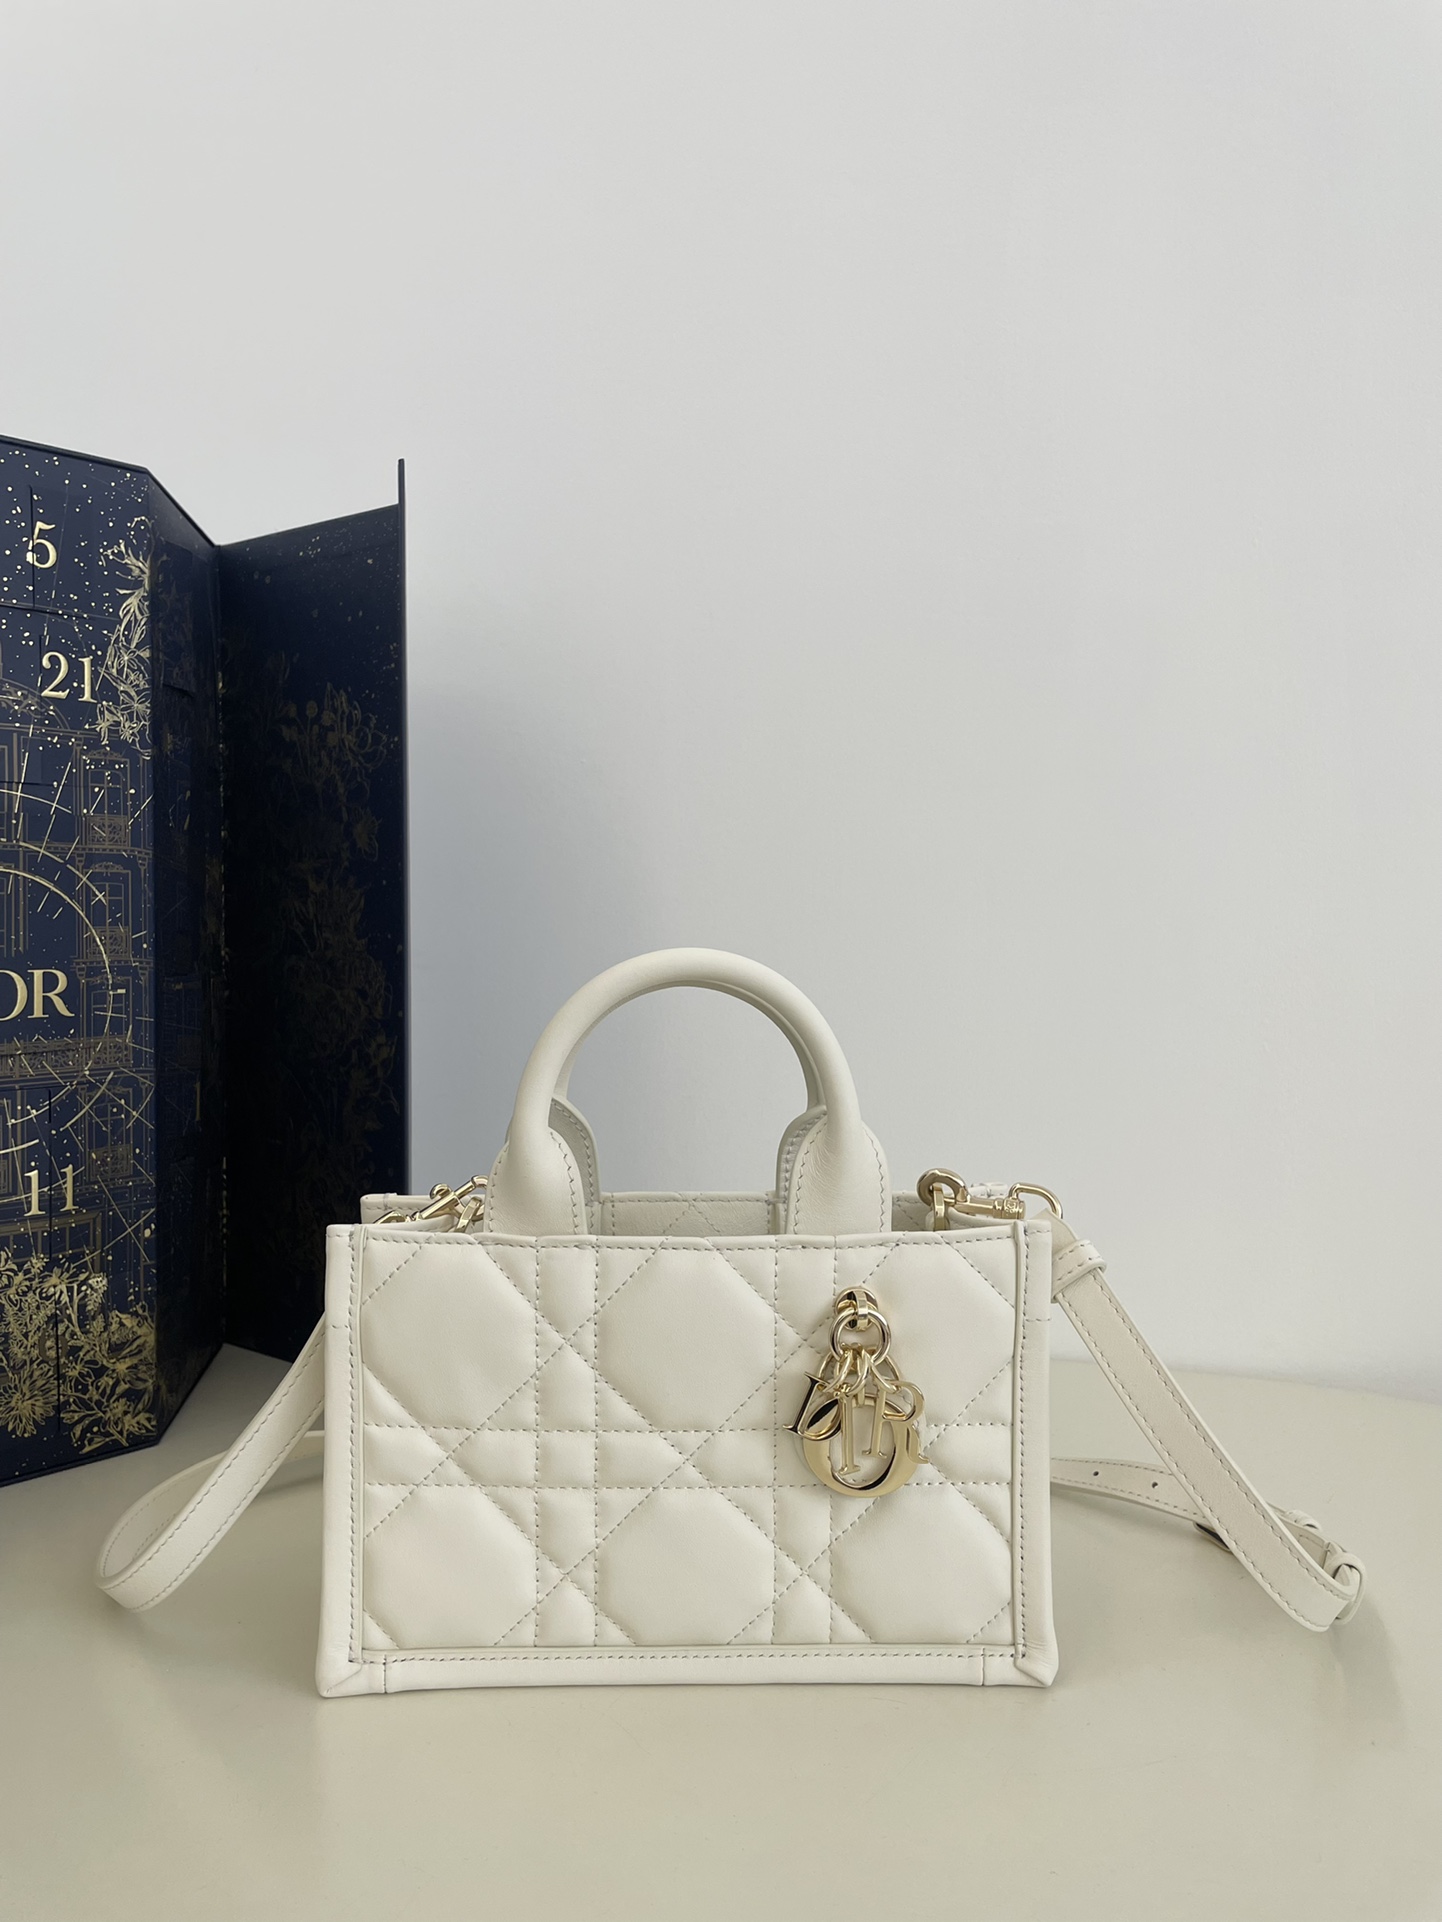 Dior Book Tote Torby Tote Złoto Biały Skóra cielęca krowia Kolekcja letnia Mini p0031960780